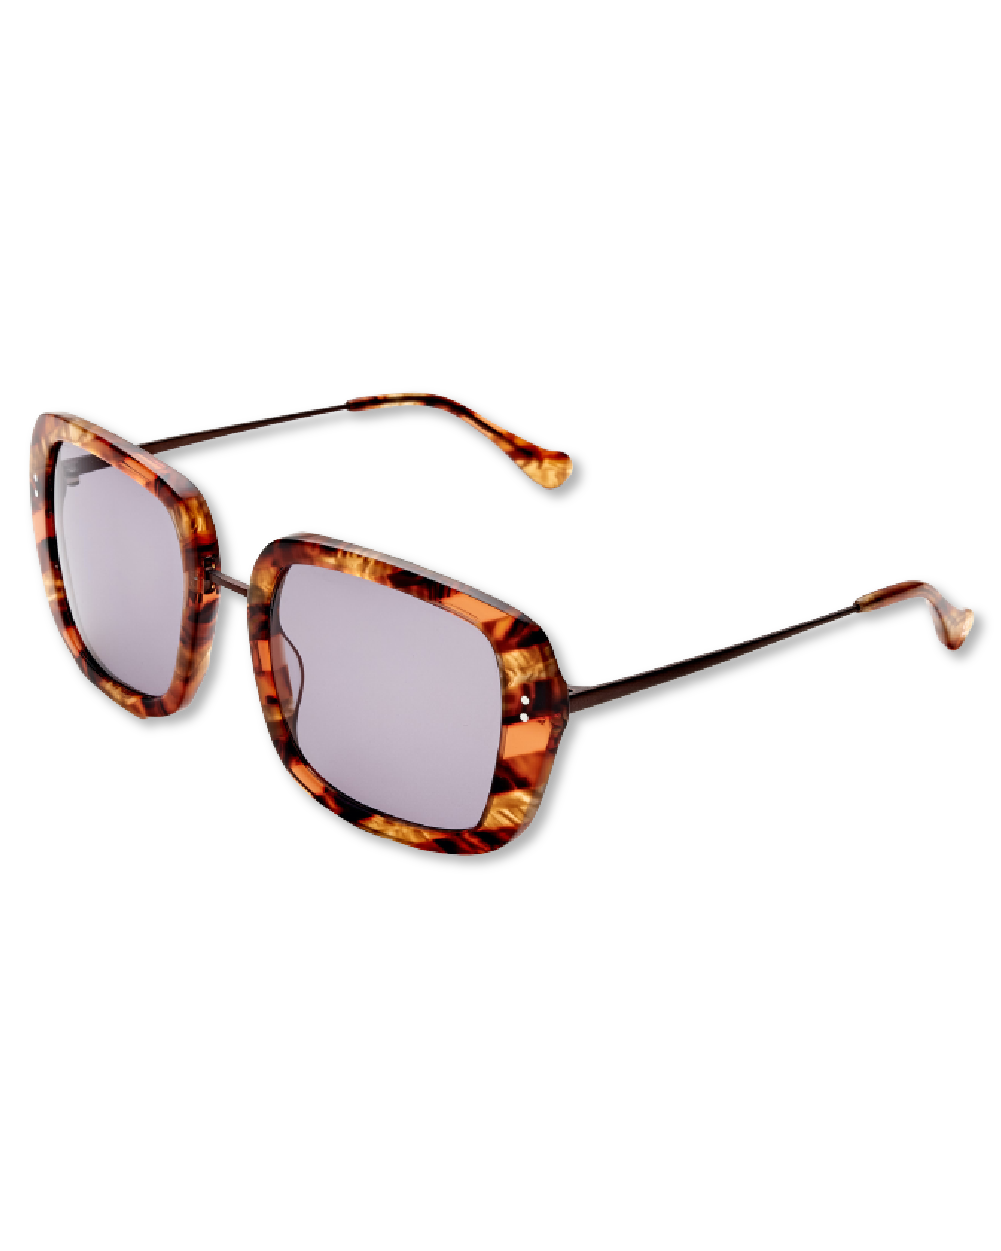 Baker Street Sunglasses x Kenmark